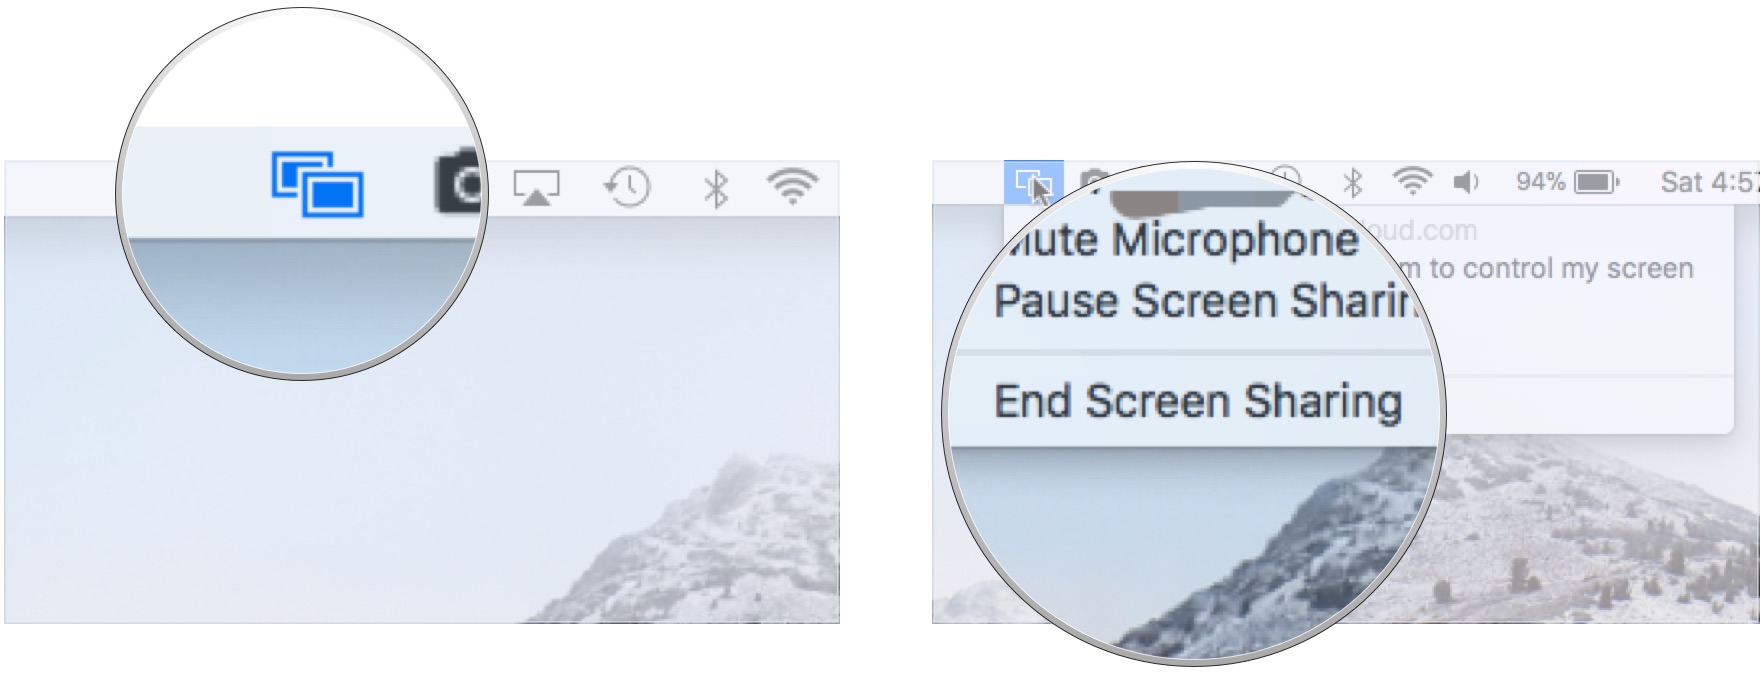 Click screen sharing icon in menu bar, click End Screen Sharing